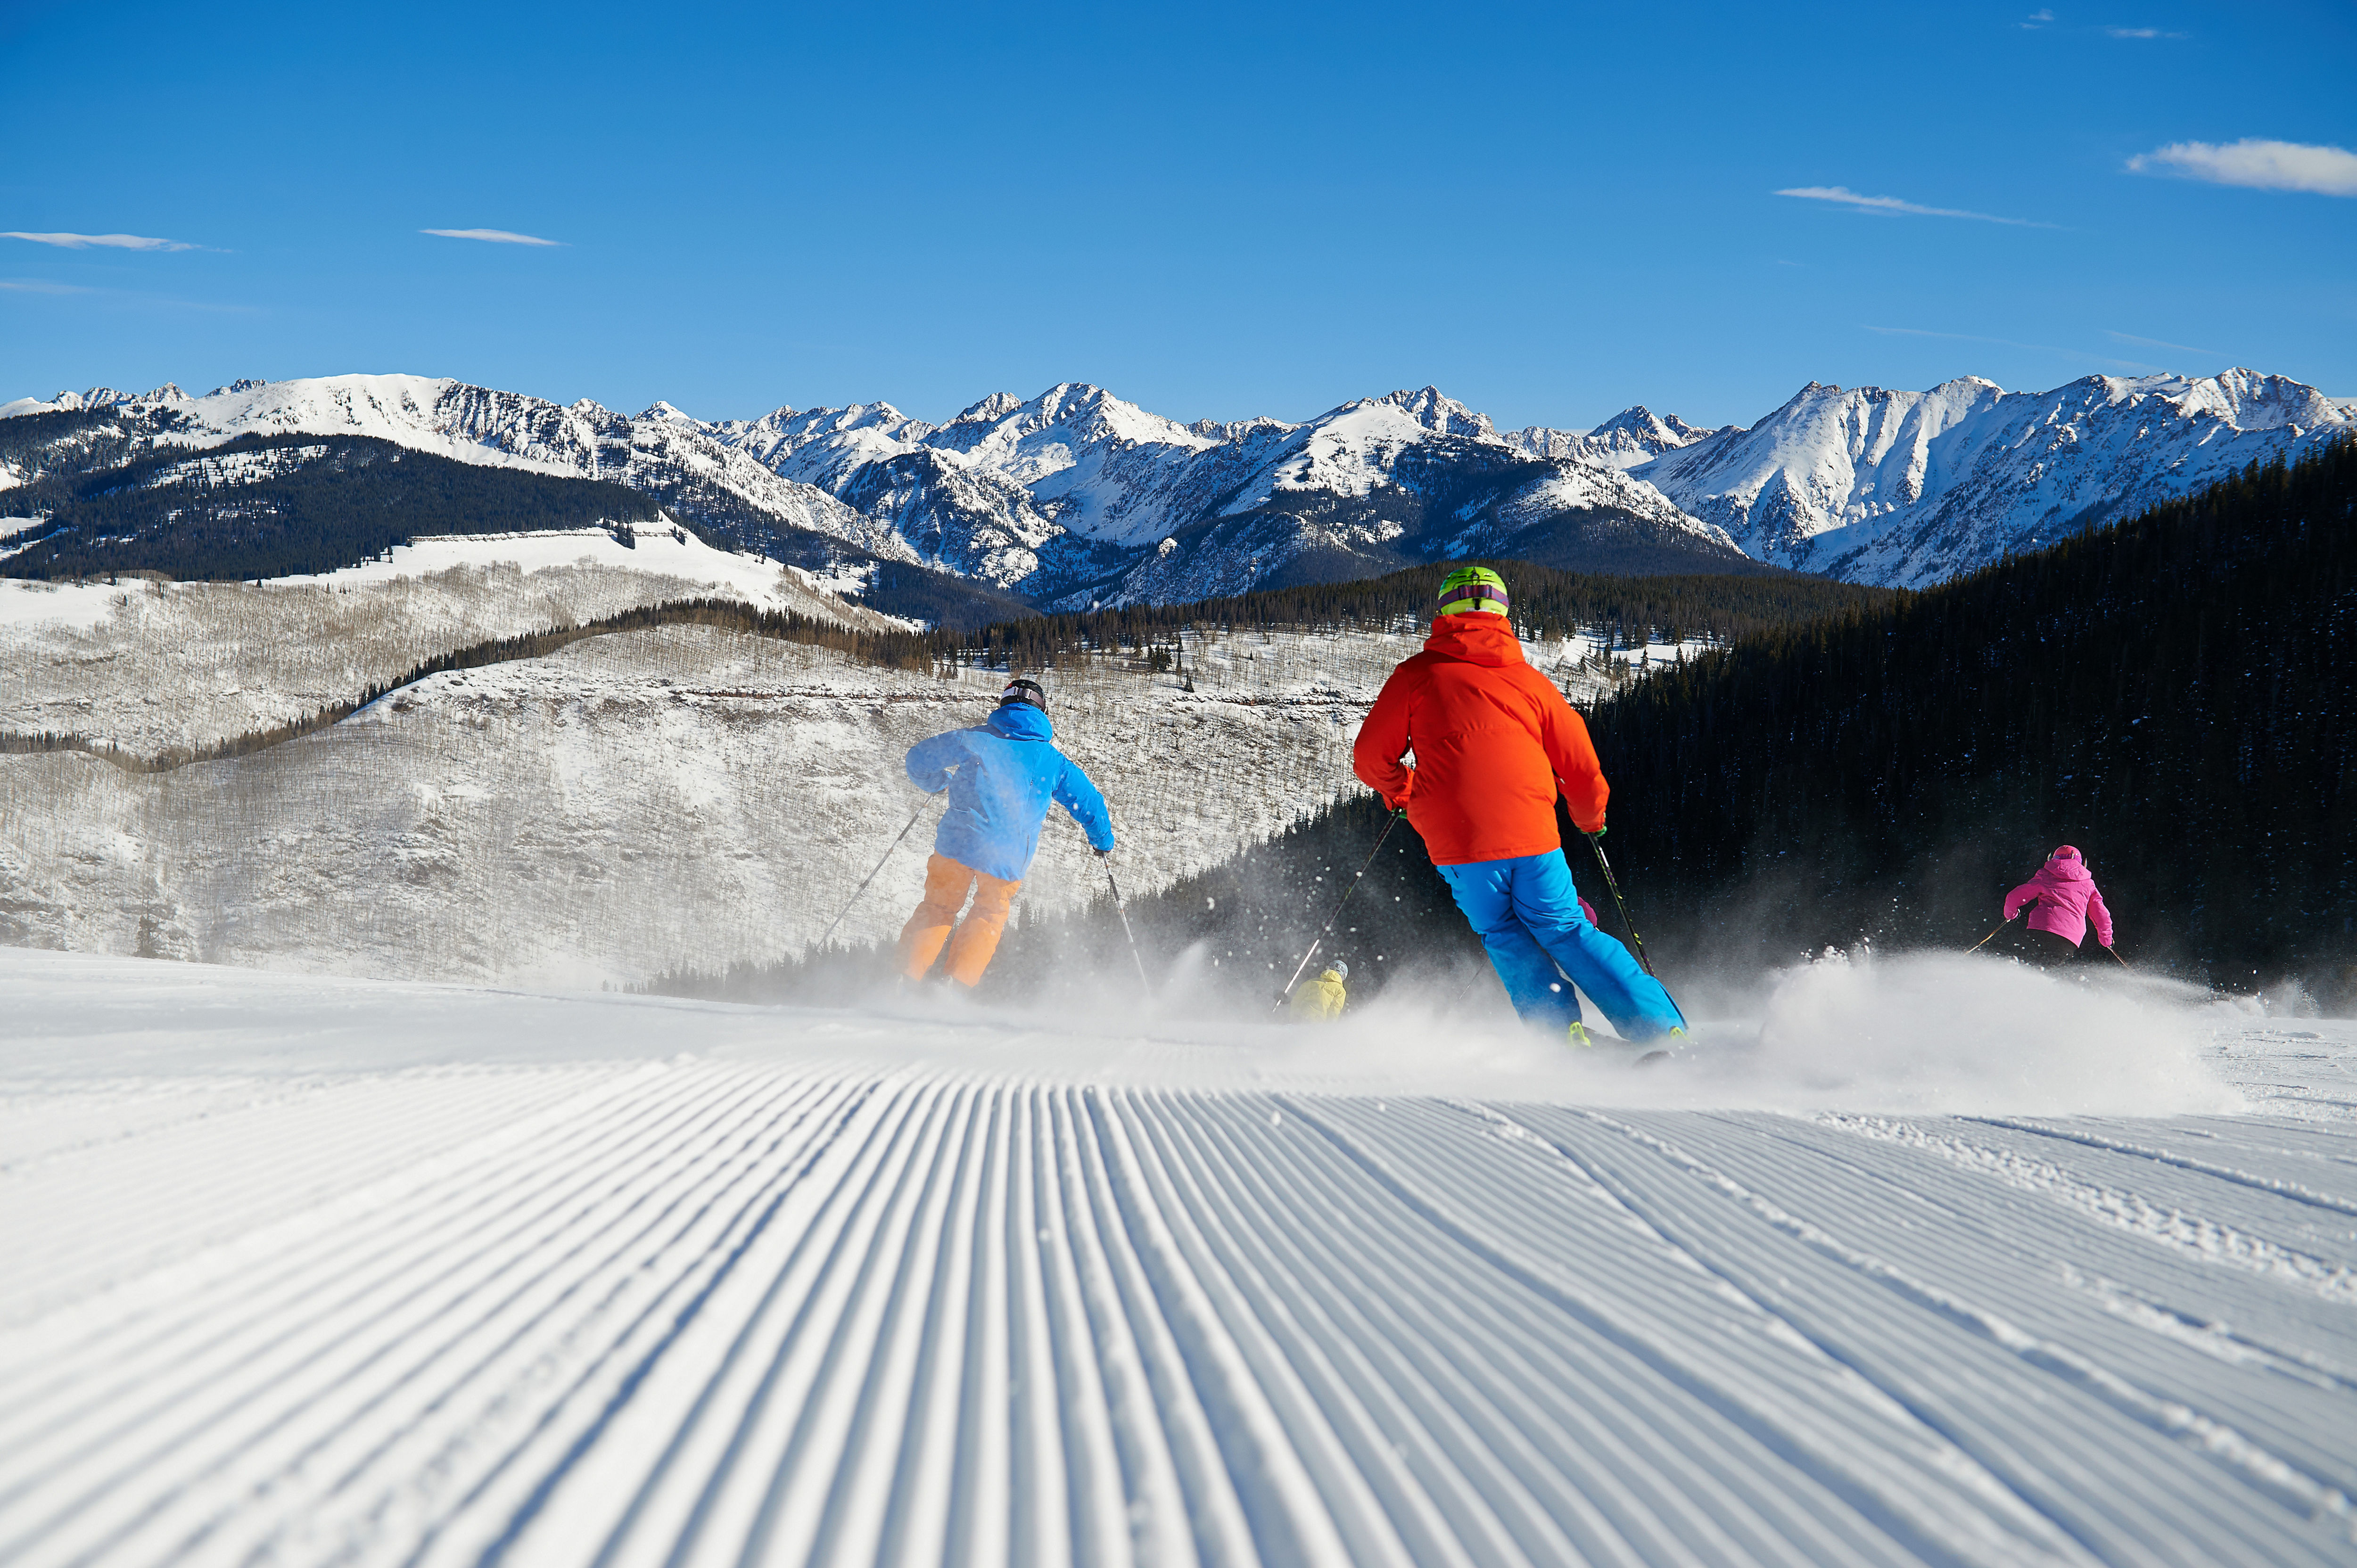 You don't need to ski to 'après ski'.